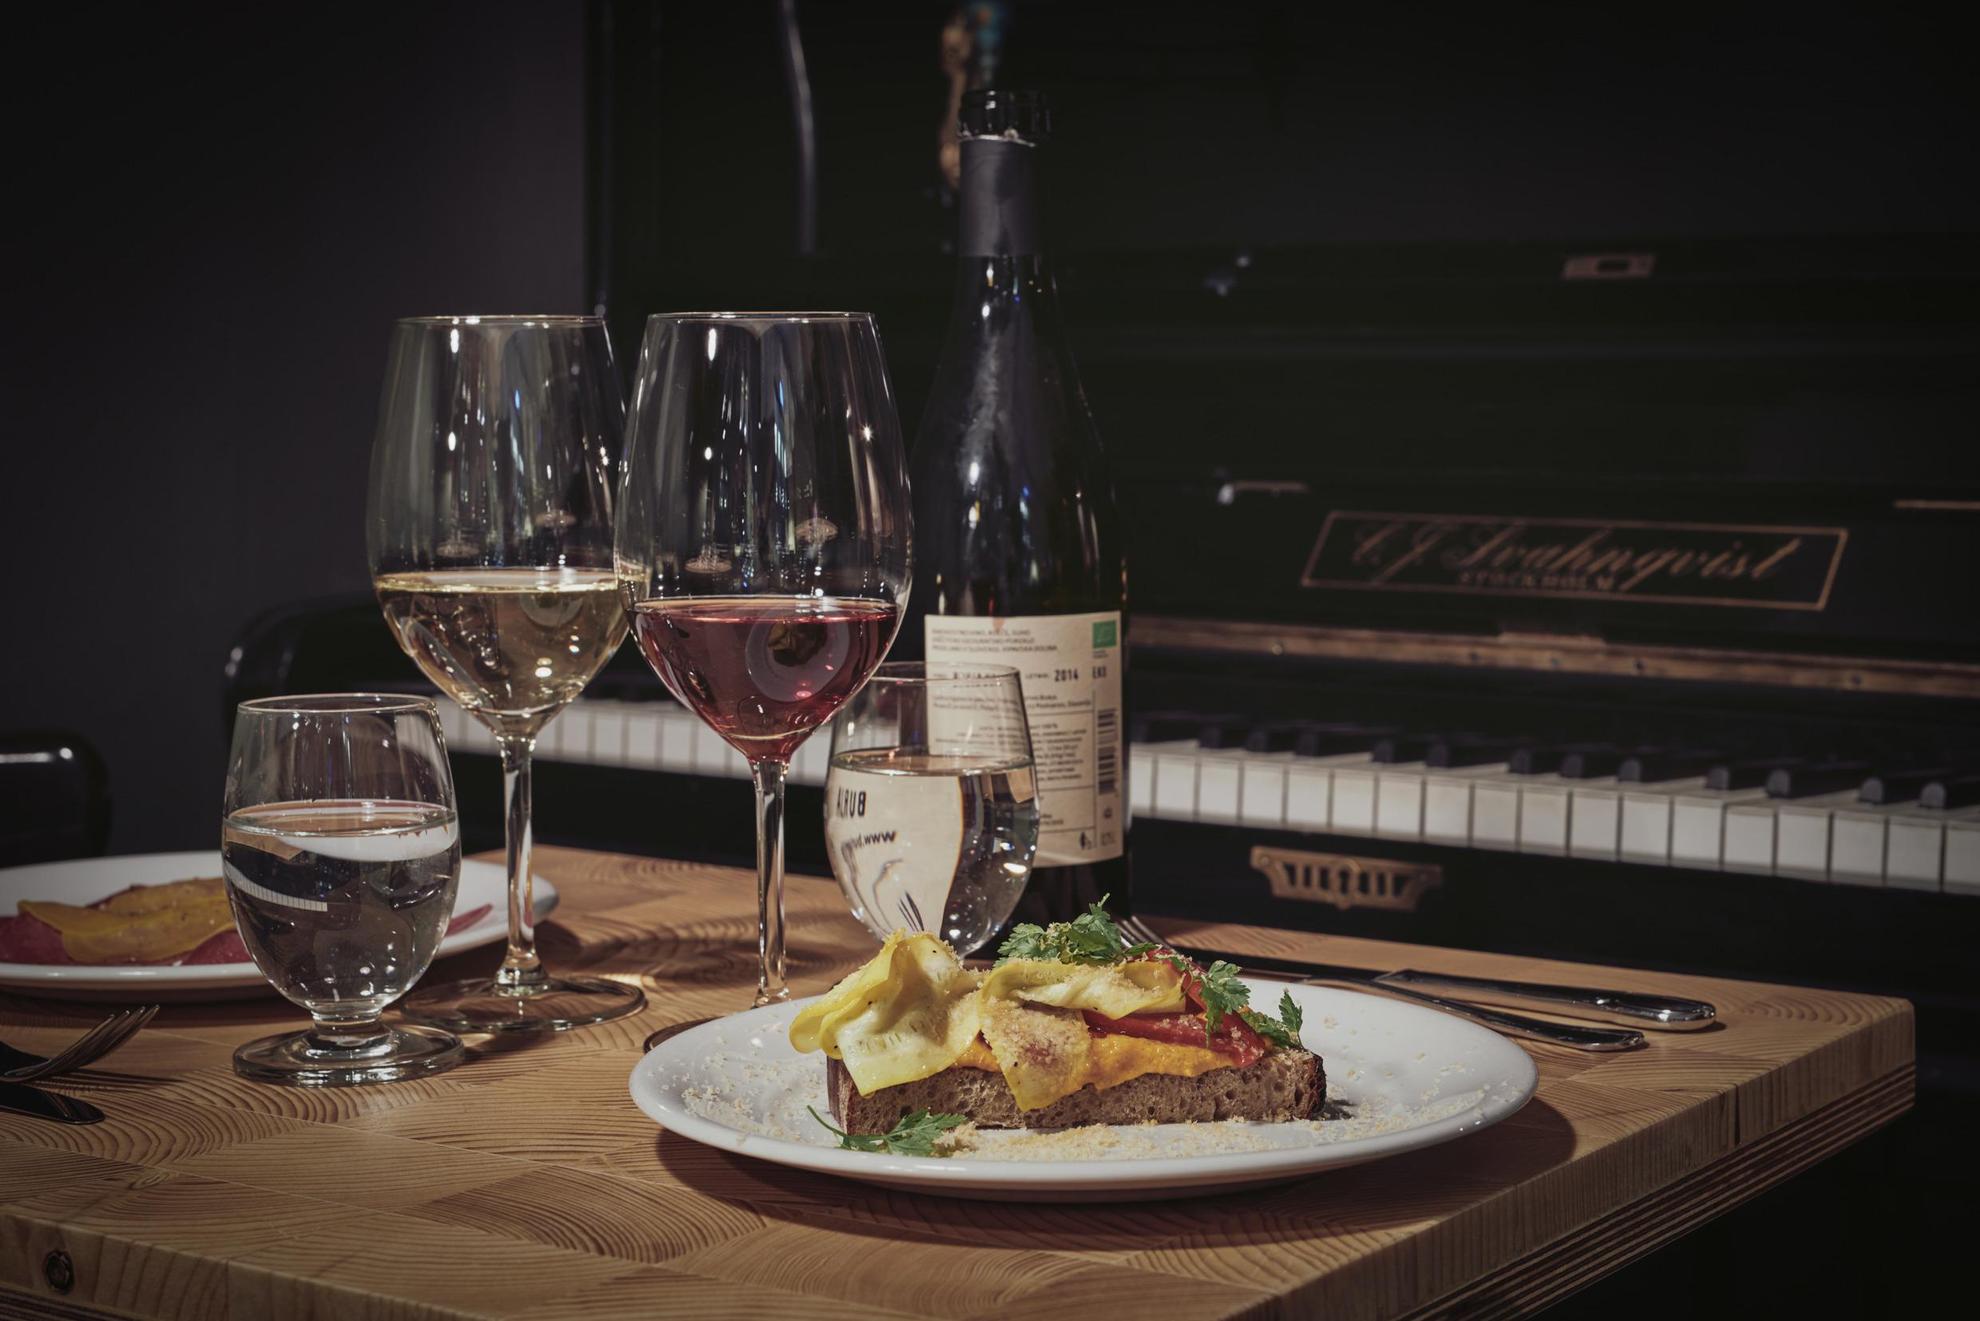 Een gedekte tafel met een fles wijn, twee borden met eten en twee glazen wijn. De tafel staat naast een piano.